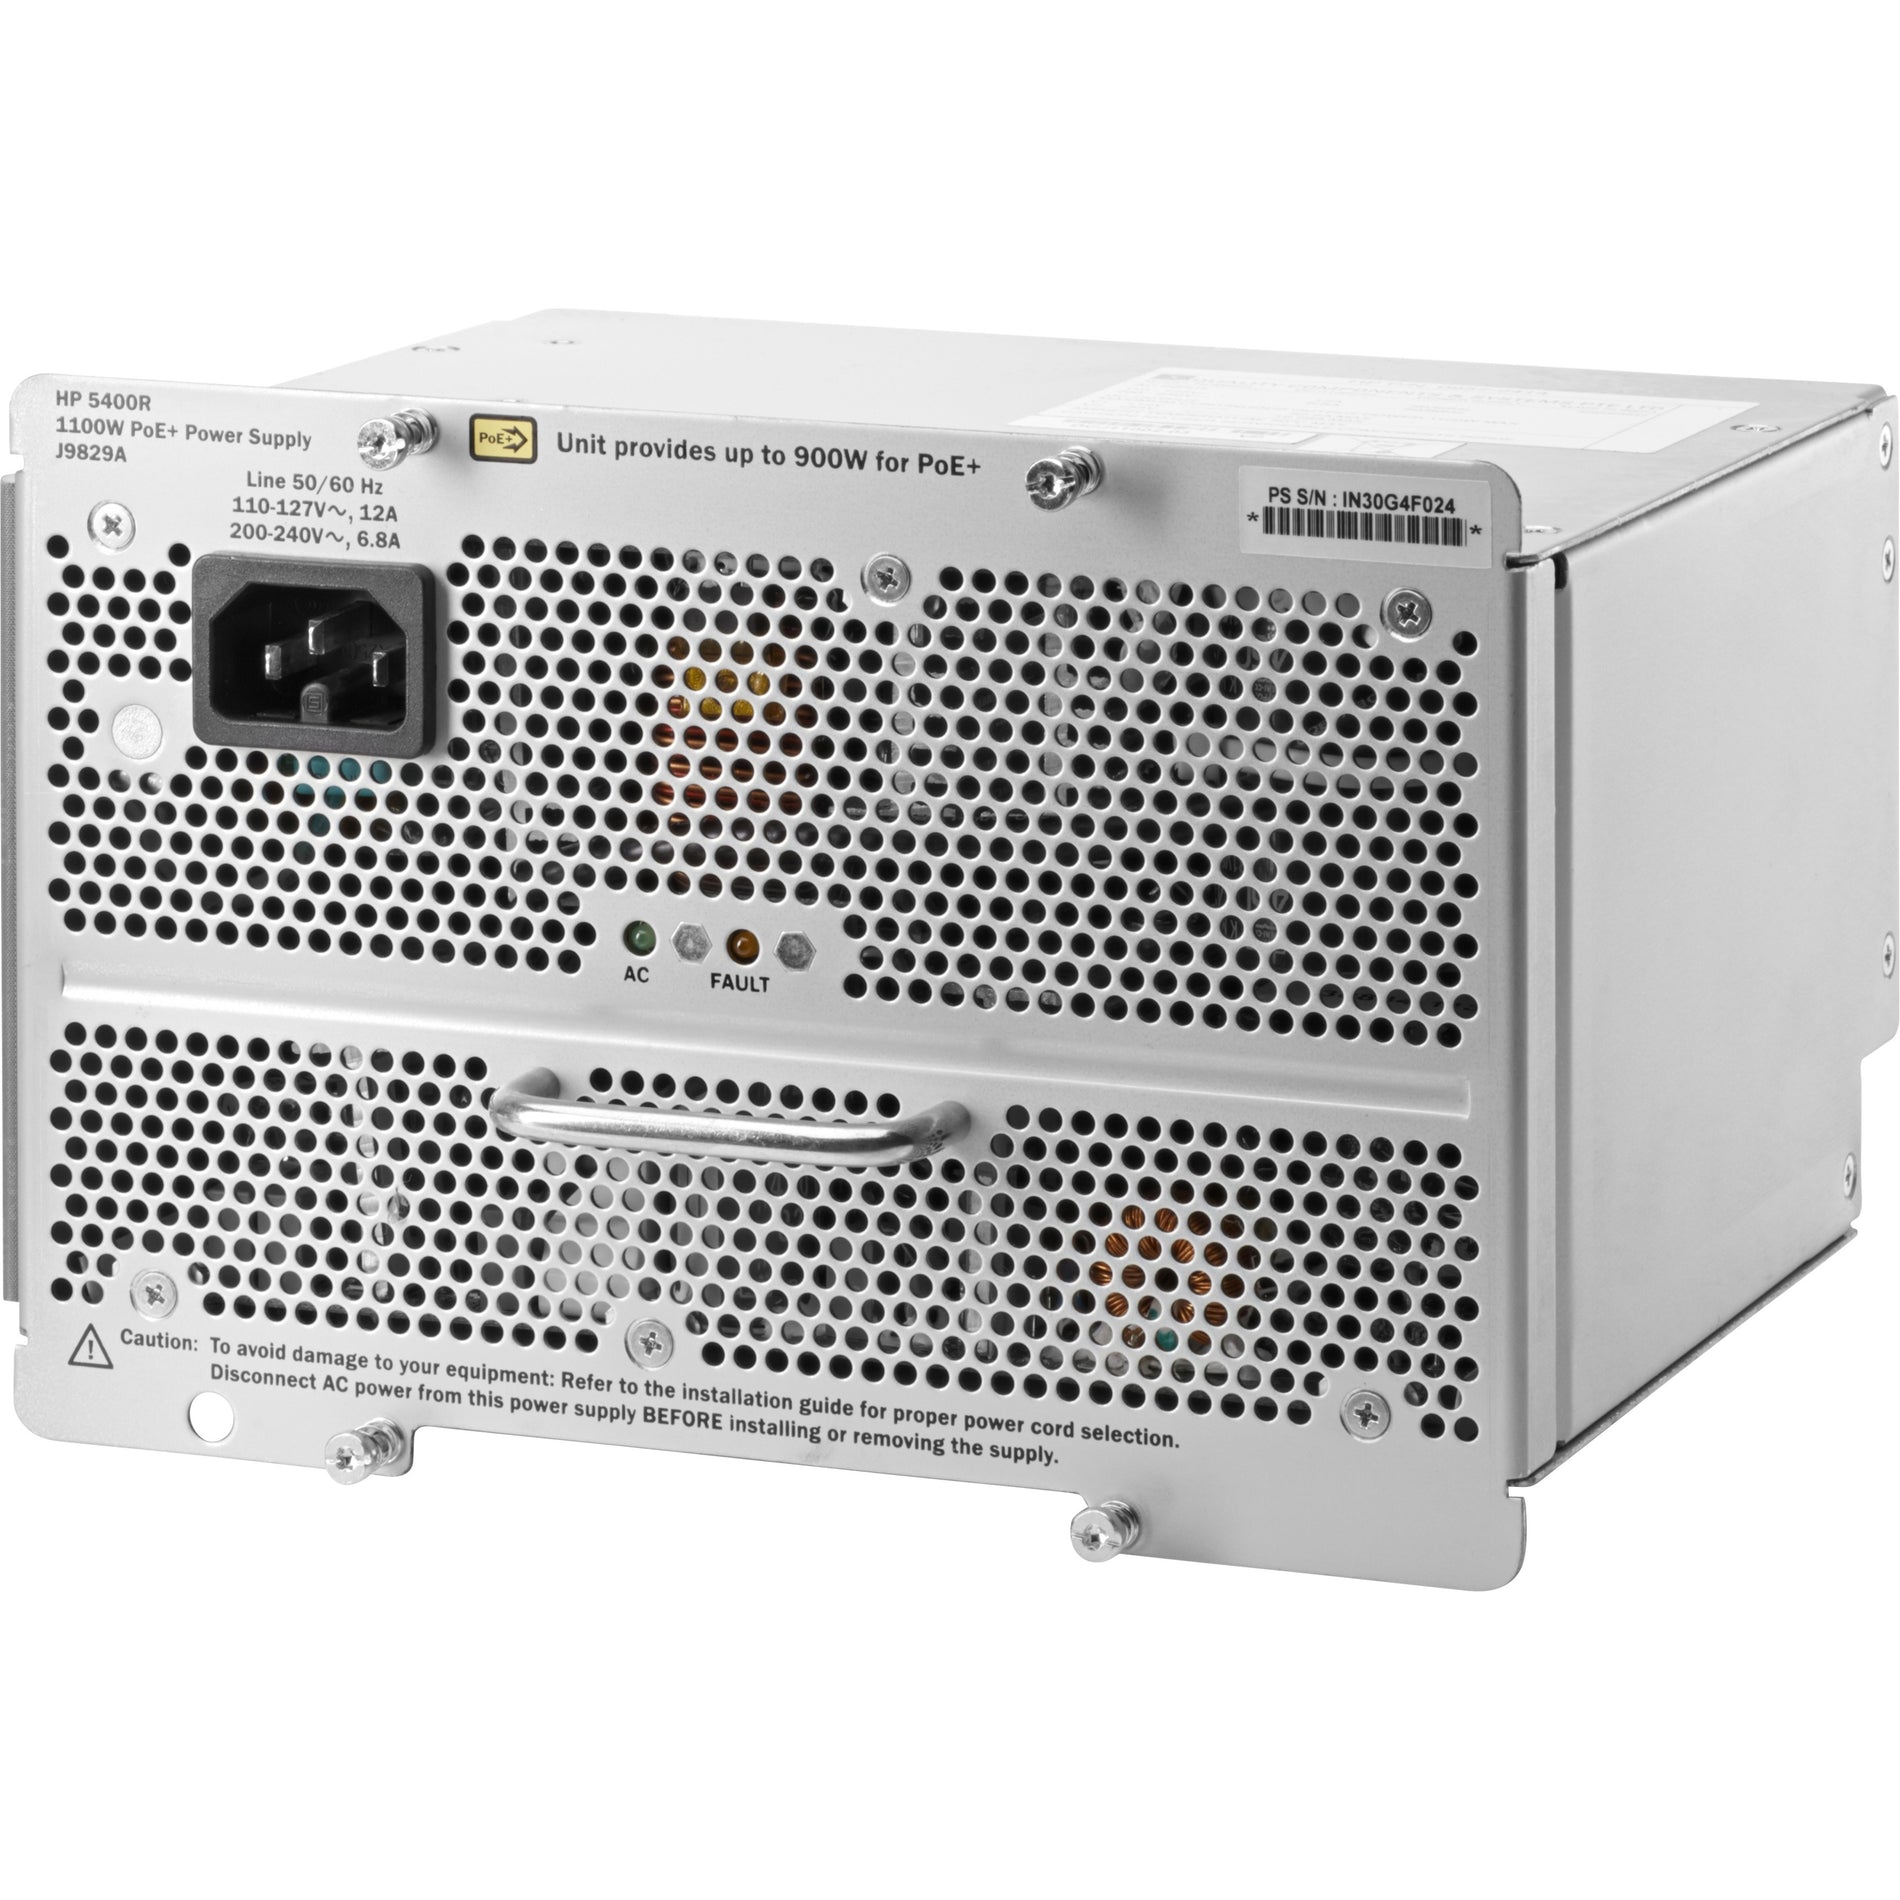 HPE 5400R 1100W PoE+ zl2 Power Supply, Lifetime Warranty, 1100W Output Power